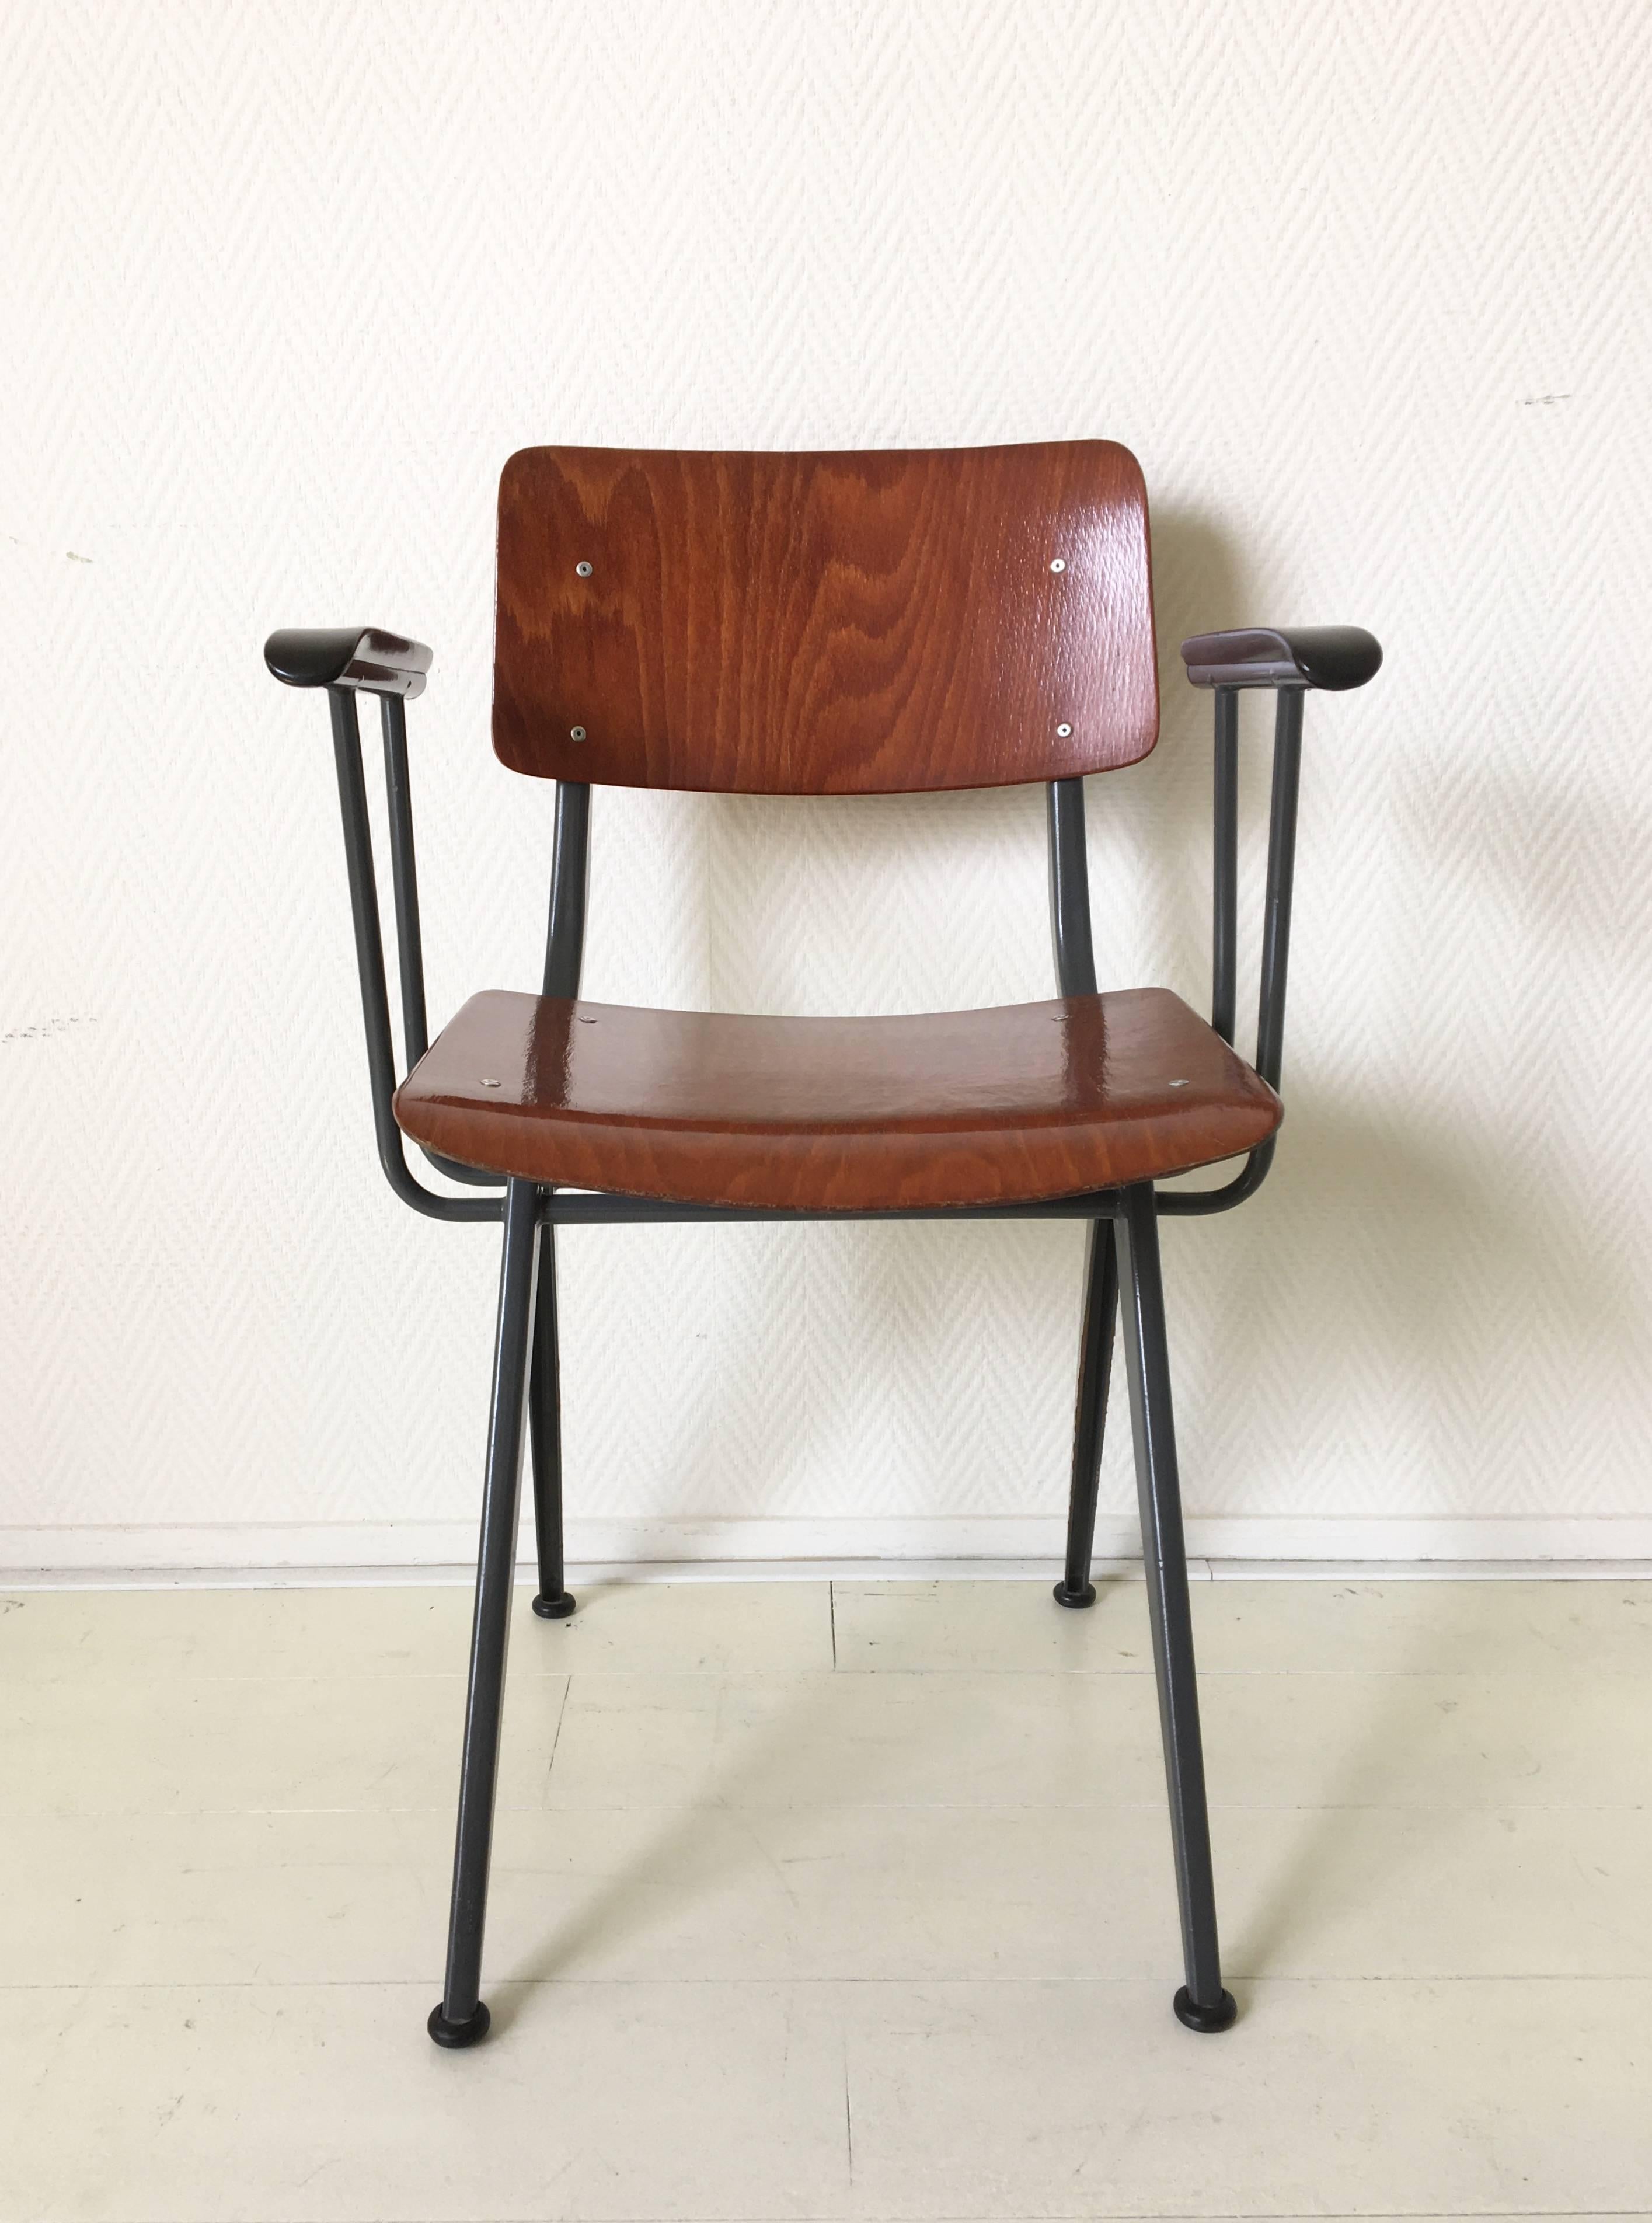 Atemberaubendes, minimalistisches Design mit einem anthrazitfarbenen Metallgestell und Sitz und Rückenlehne aus Pagholz. Der Stuhl hat auch schöne Armlehnen aus Bakelit. Höchstwahrscheinlich von Marko hergestellt. Obwohl es sich um ein Design aus